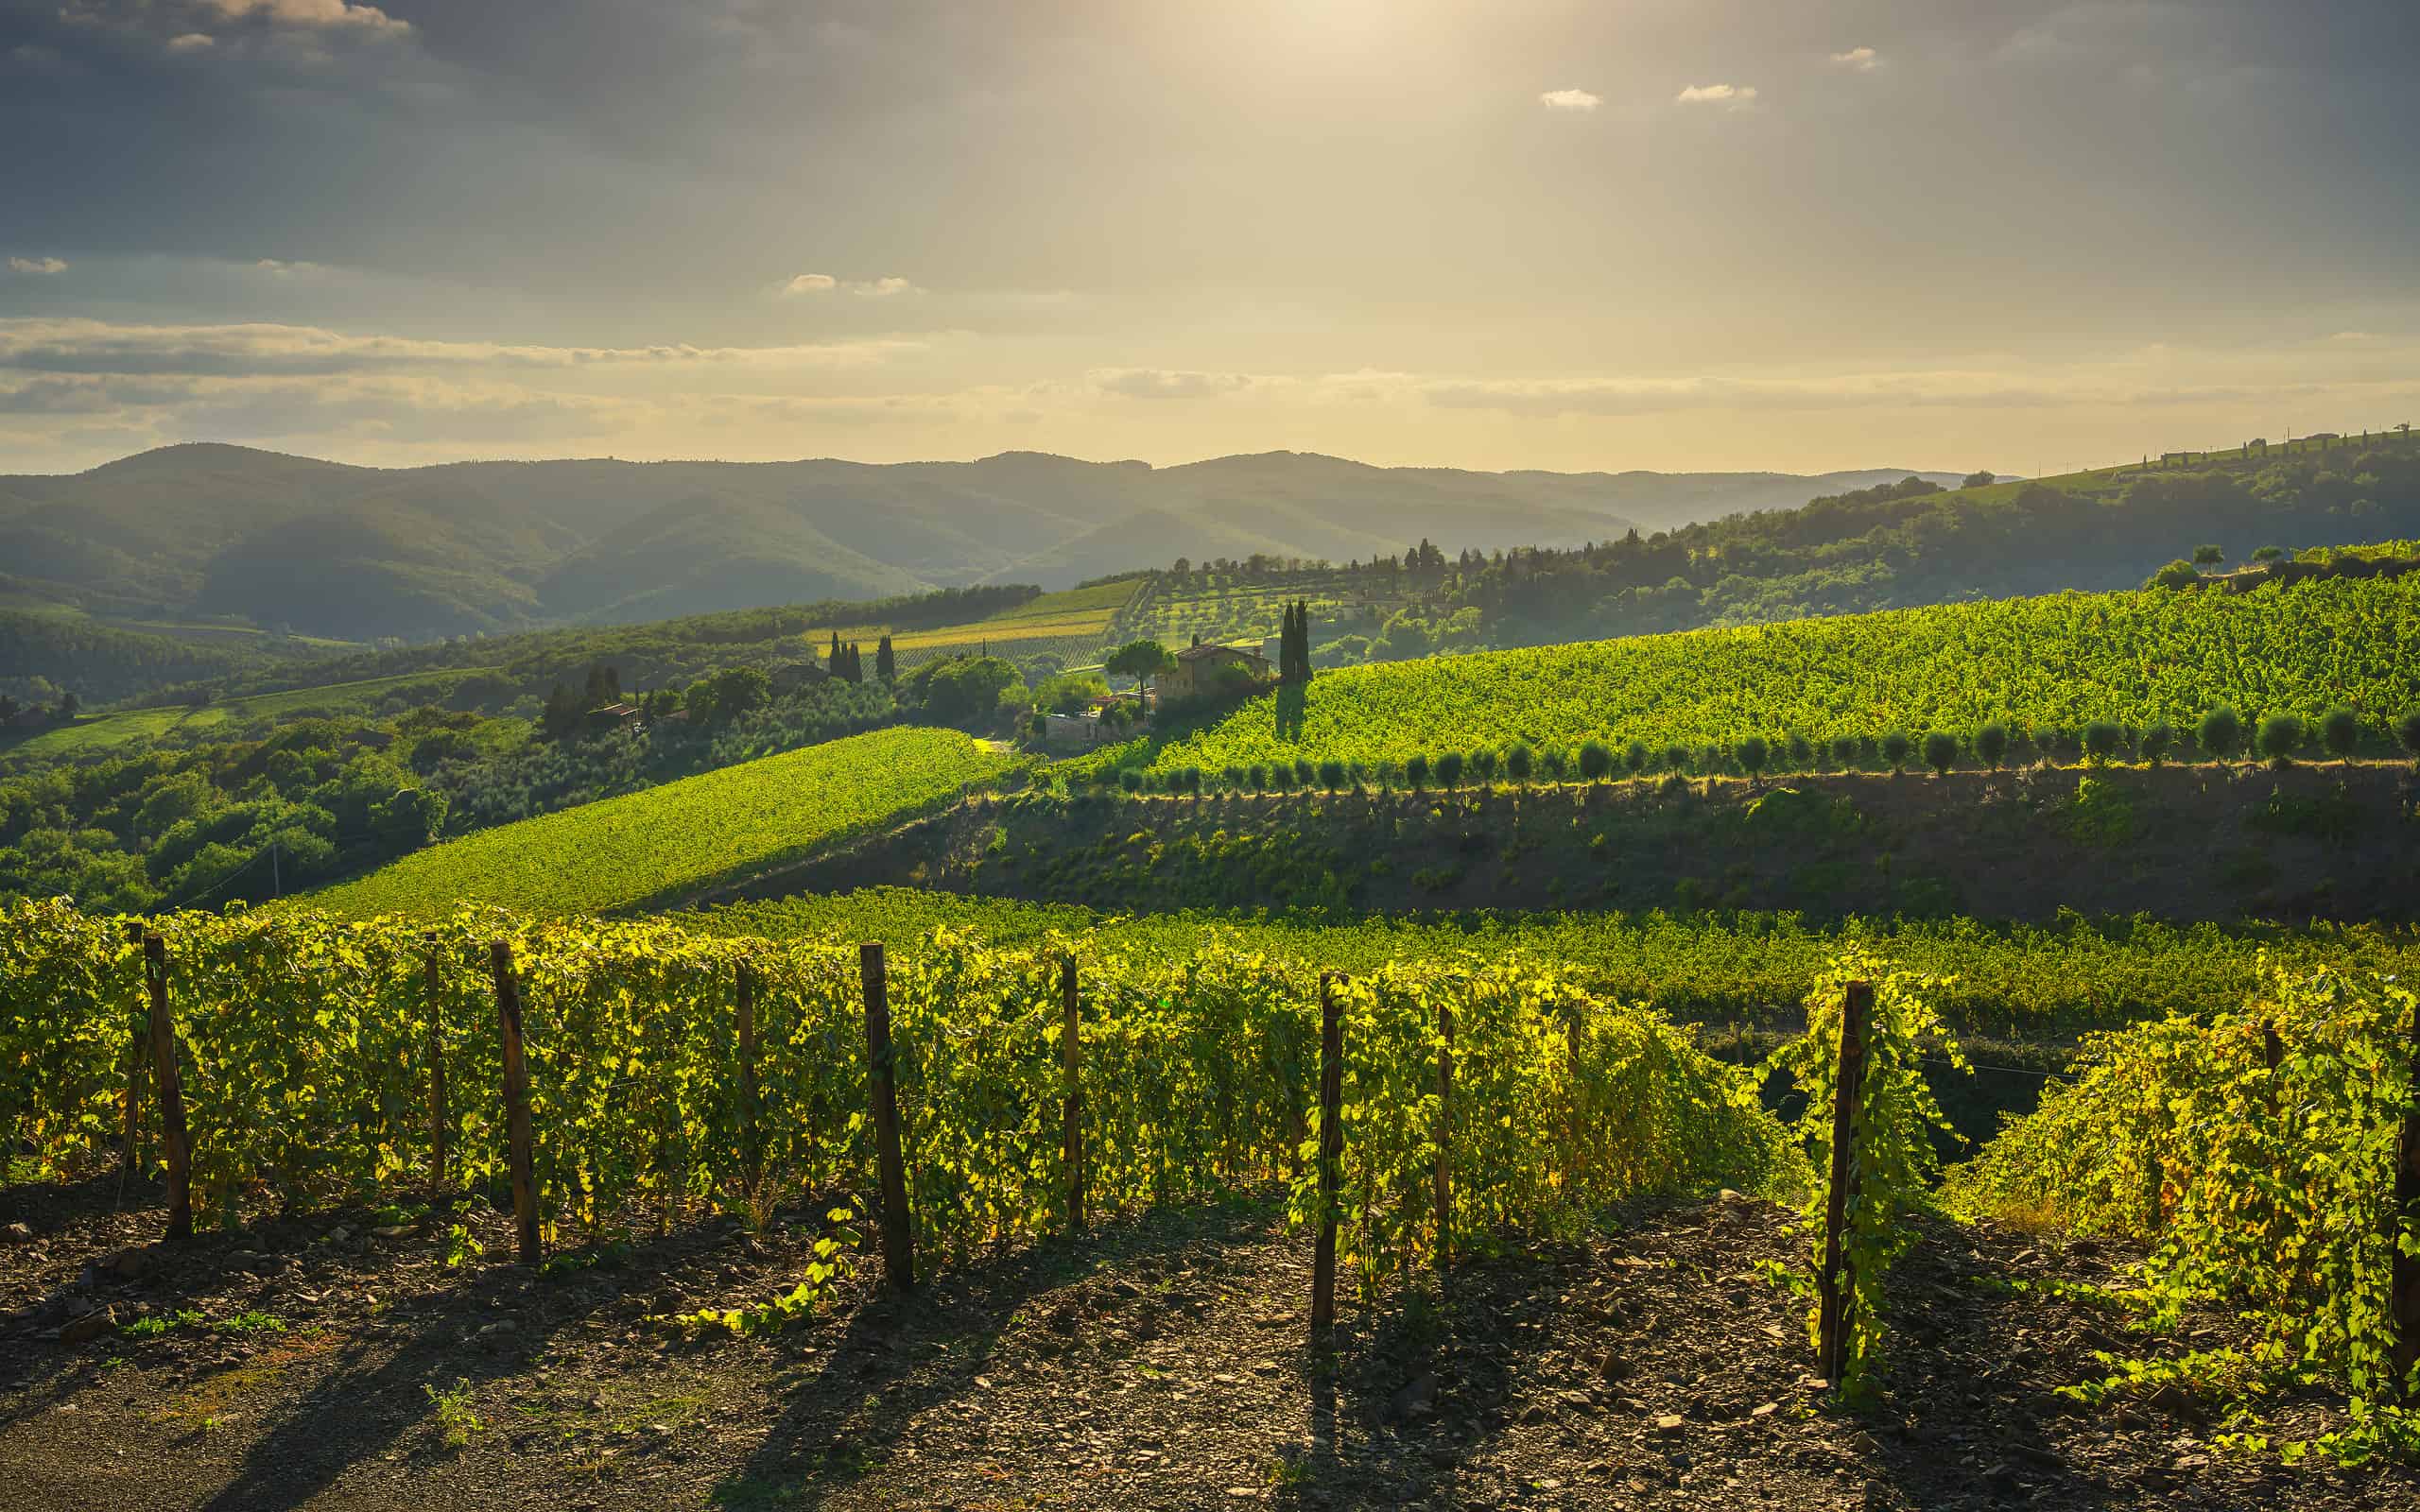 Radda in Chianti vineyard and panorama at sunset. Tuscany, Italy